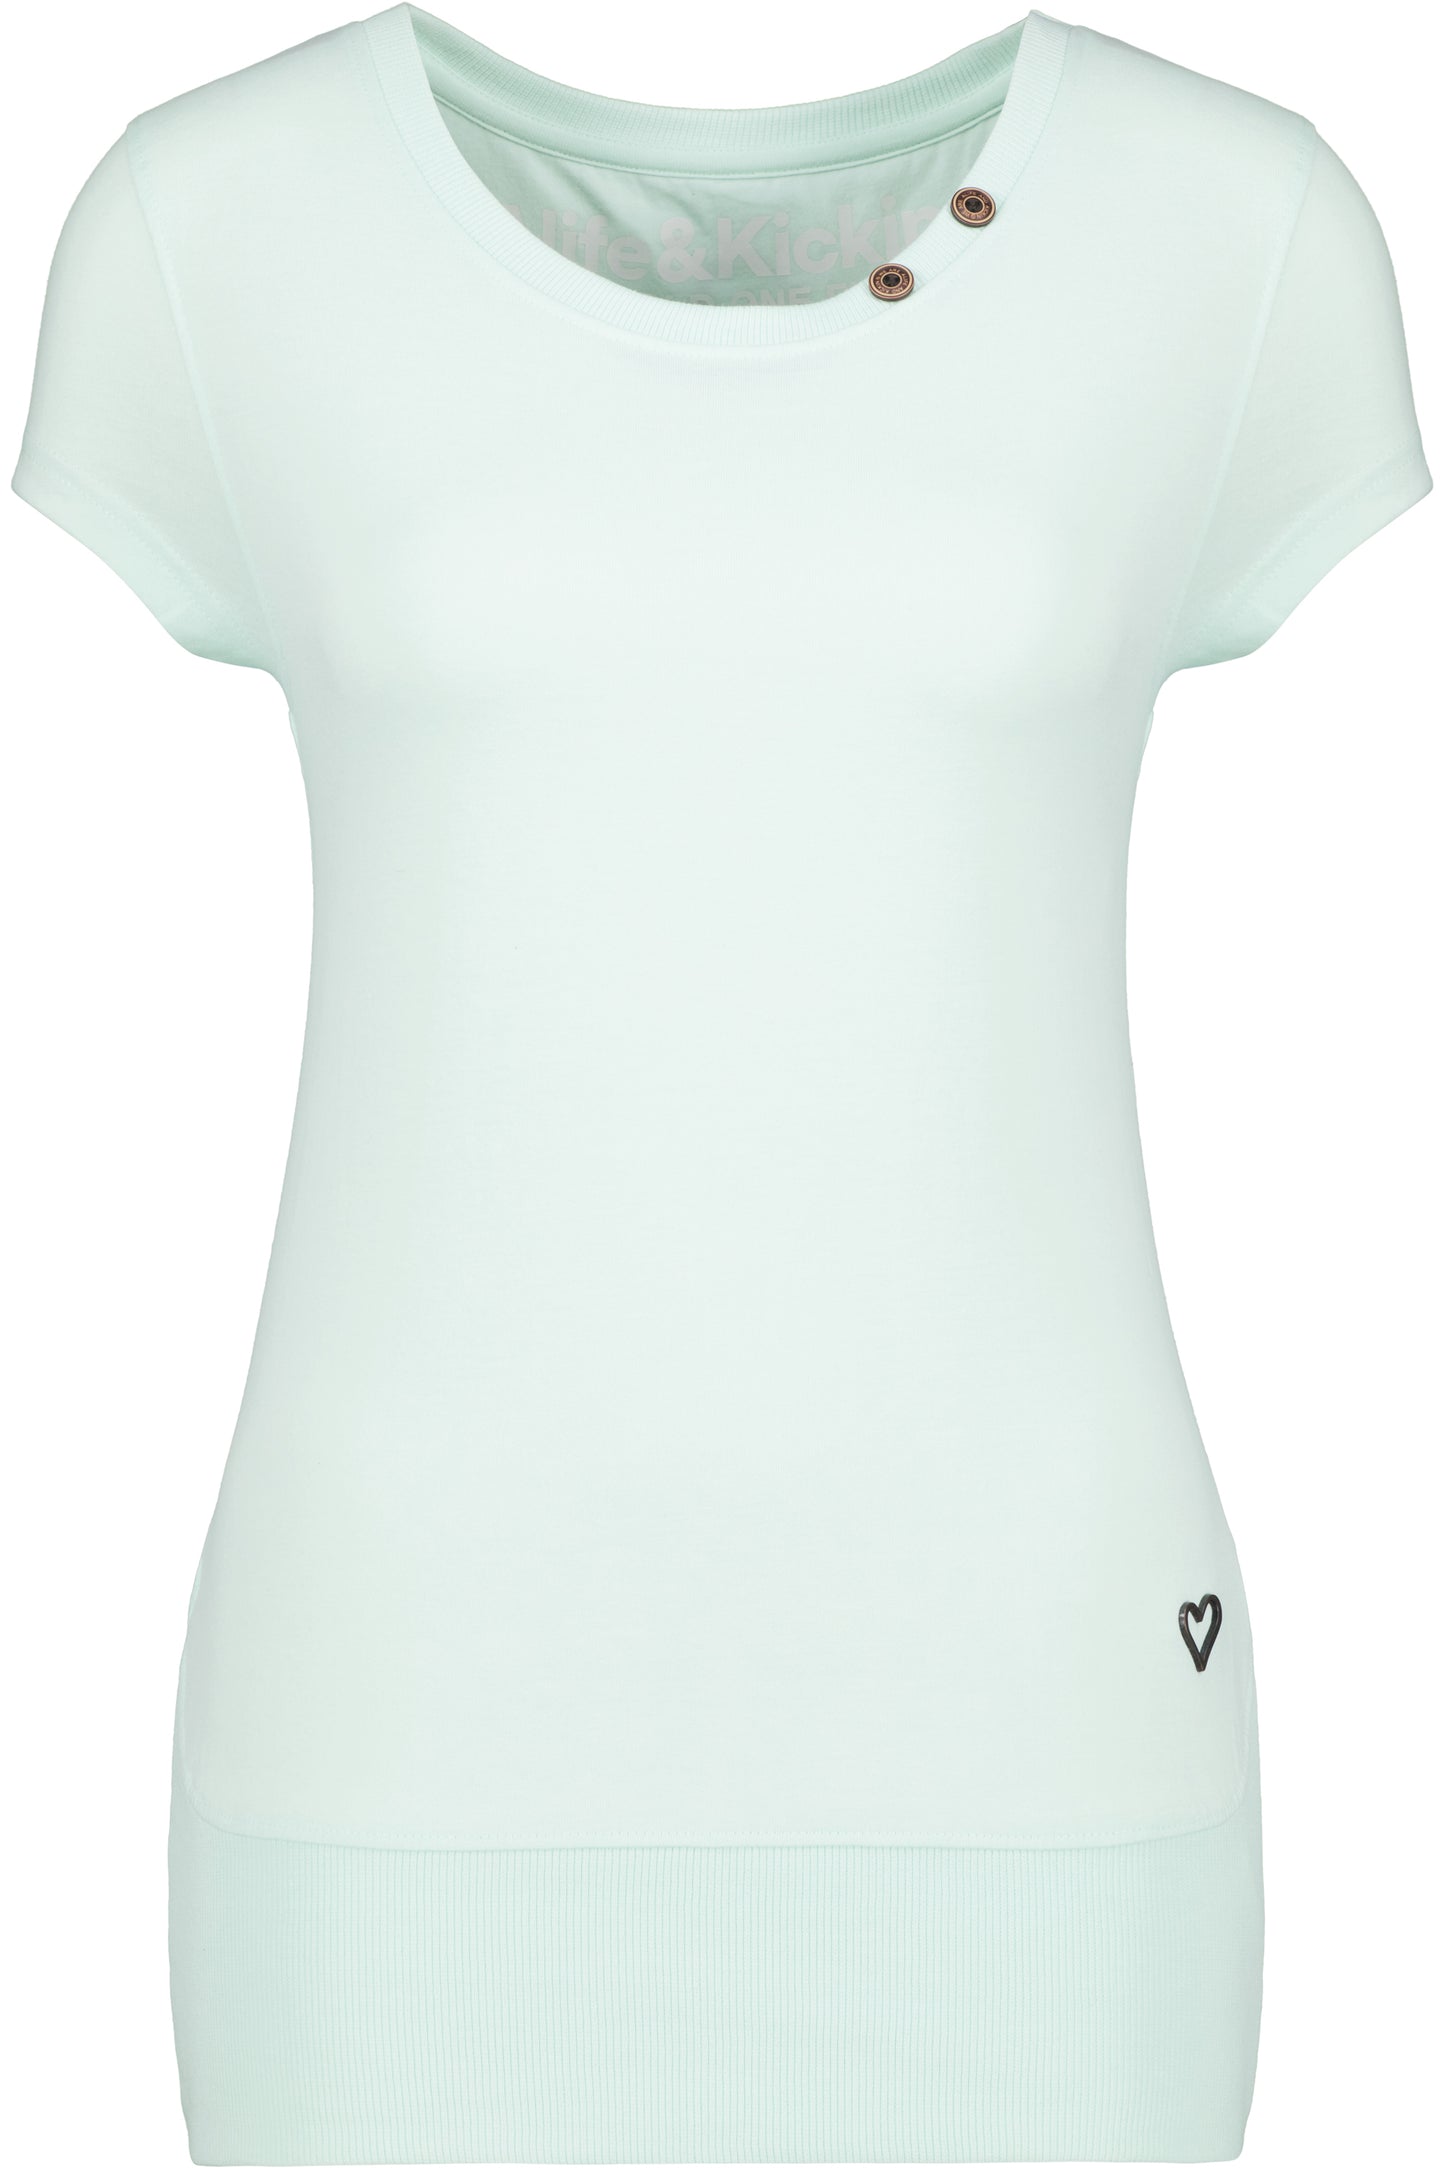 CocoAK A T-Shirt von Alife and Kickin: Farbenfroh und modisch Hellgrün